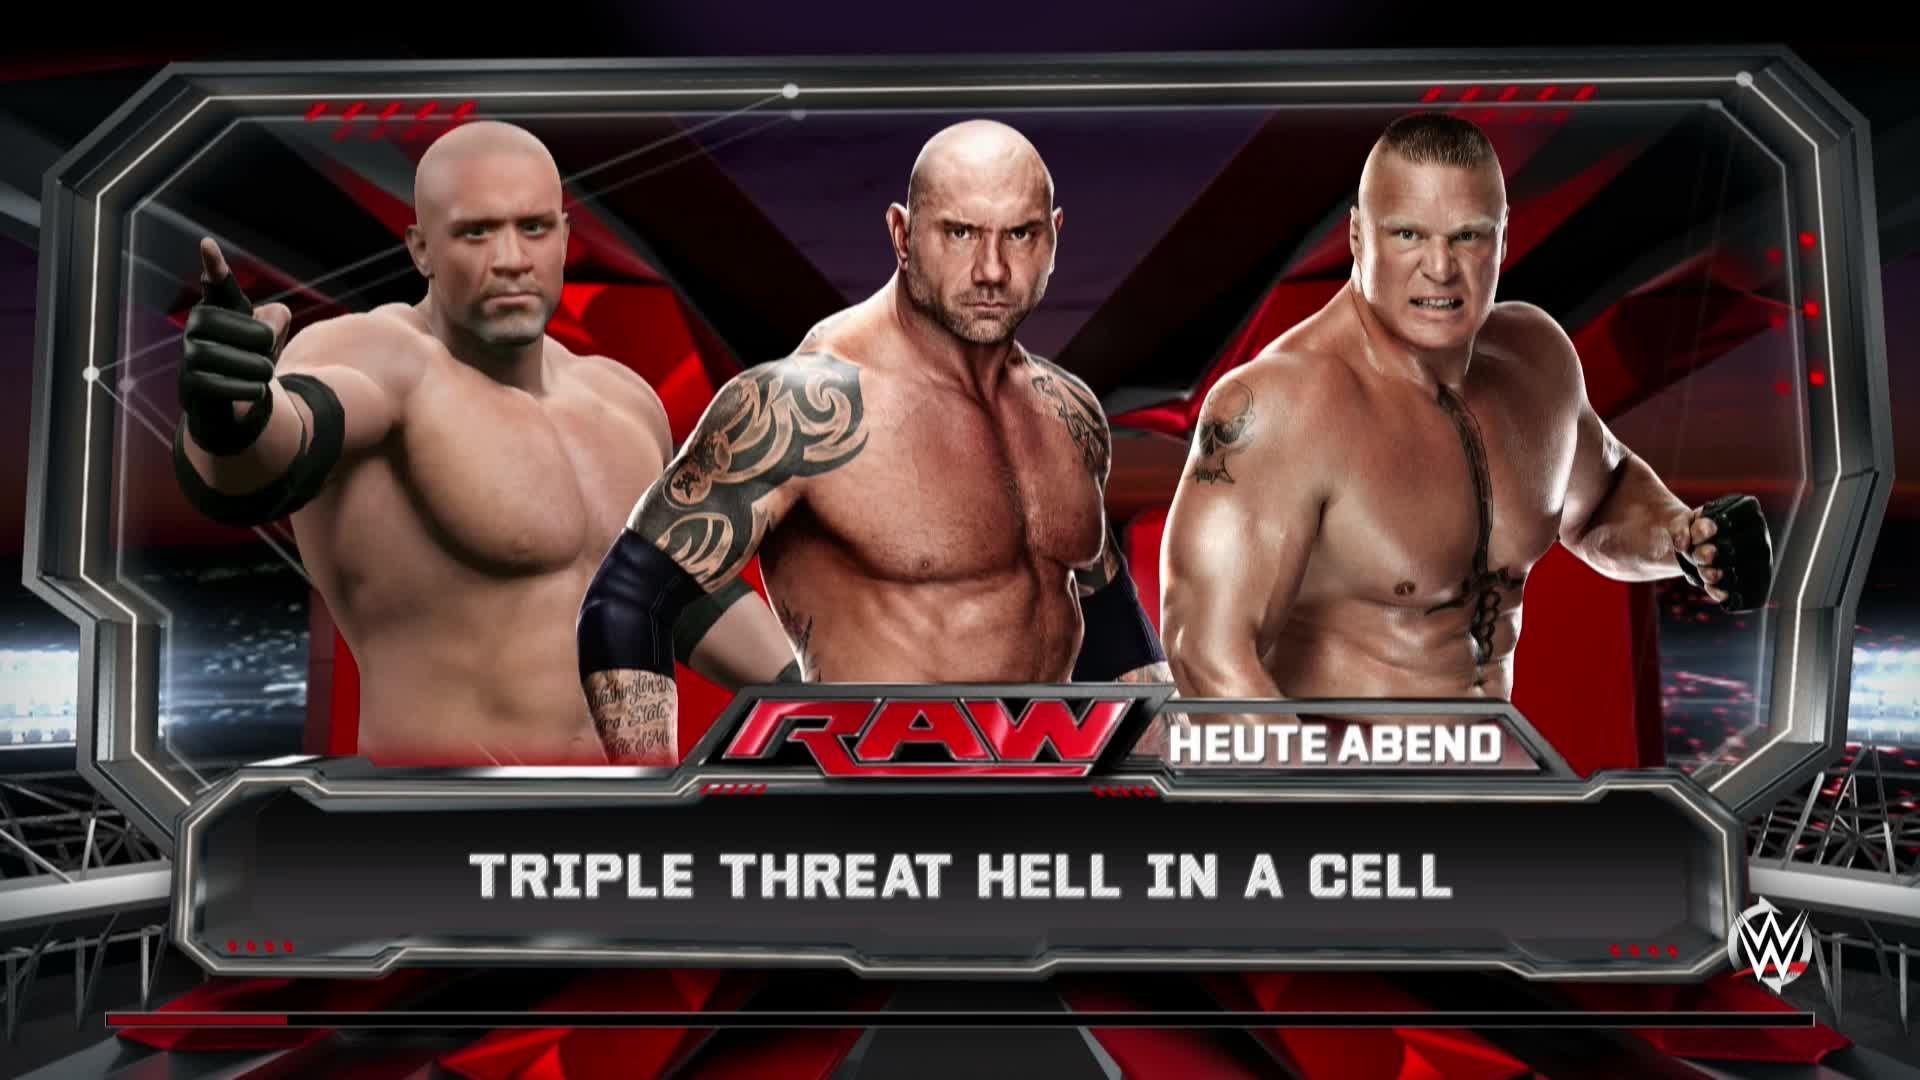 WWE 2k 15 *PC* Epic Match vs Batista vs Brock Lesnar